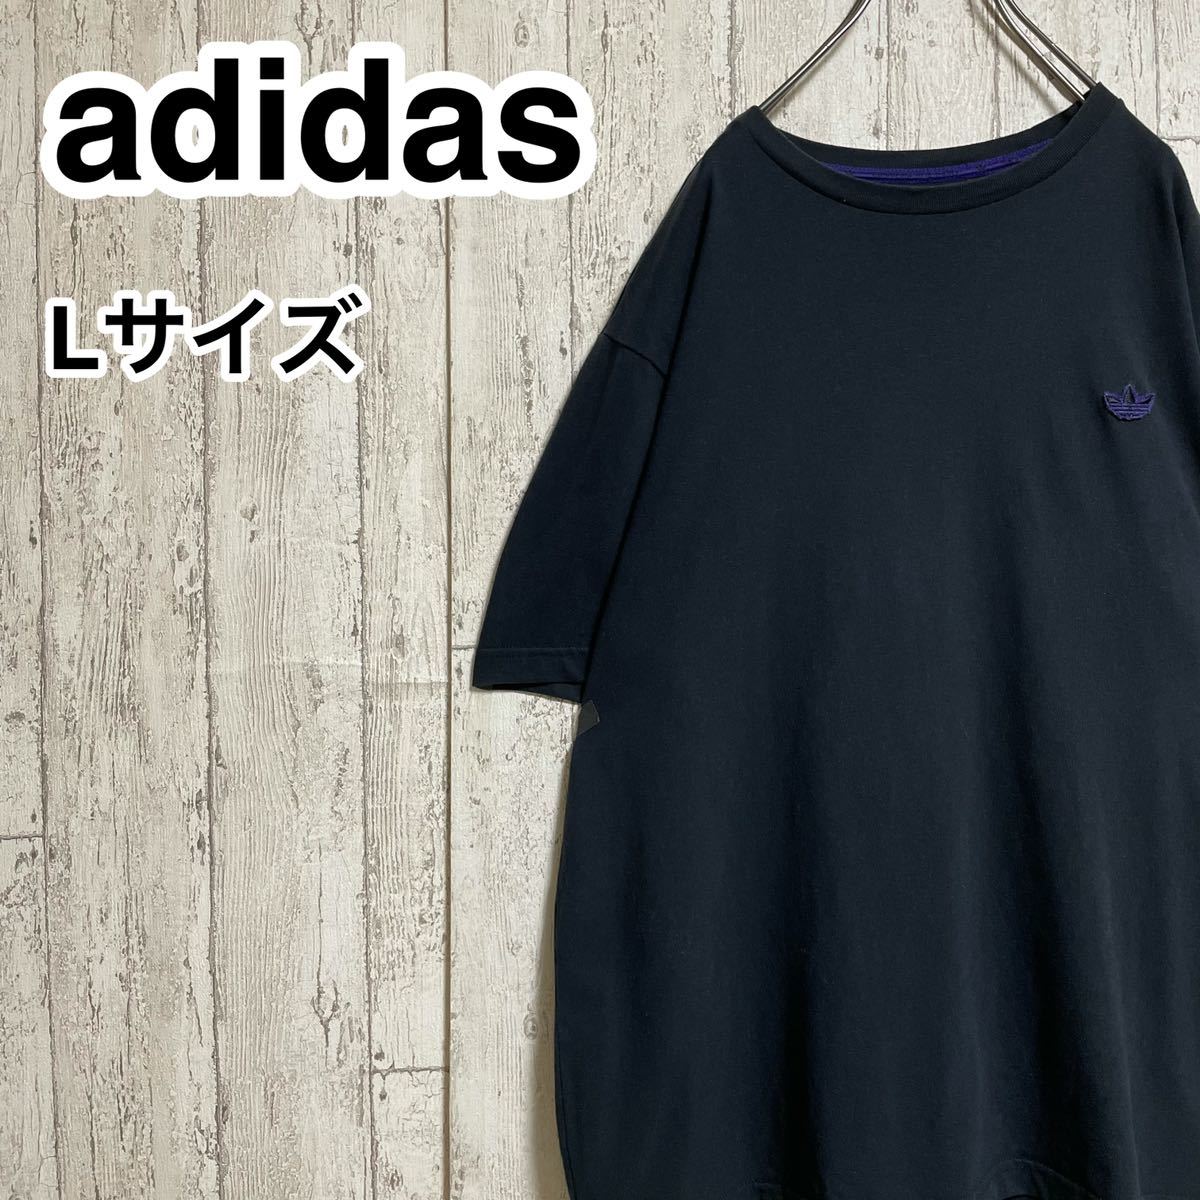 ☆送料無料☆ adidas アディダスオリジナルス Tシャツ Lサイズ 刺繍ワッペン トレフォイル 90s 21-235